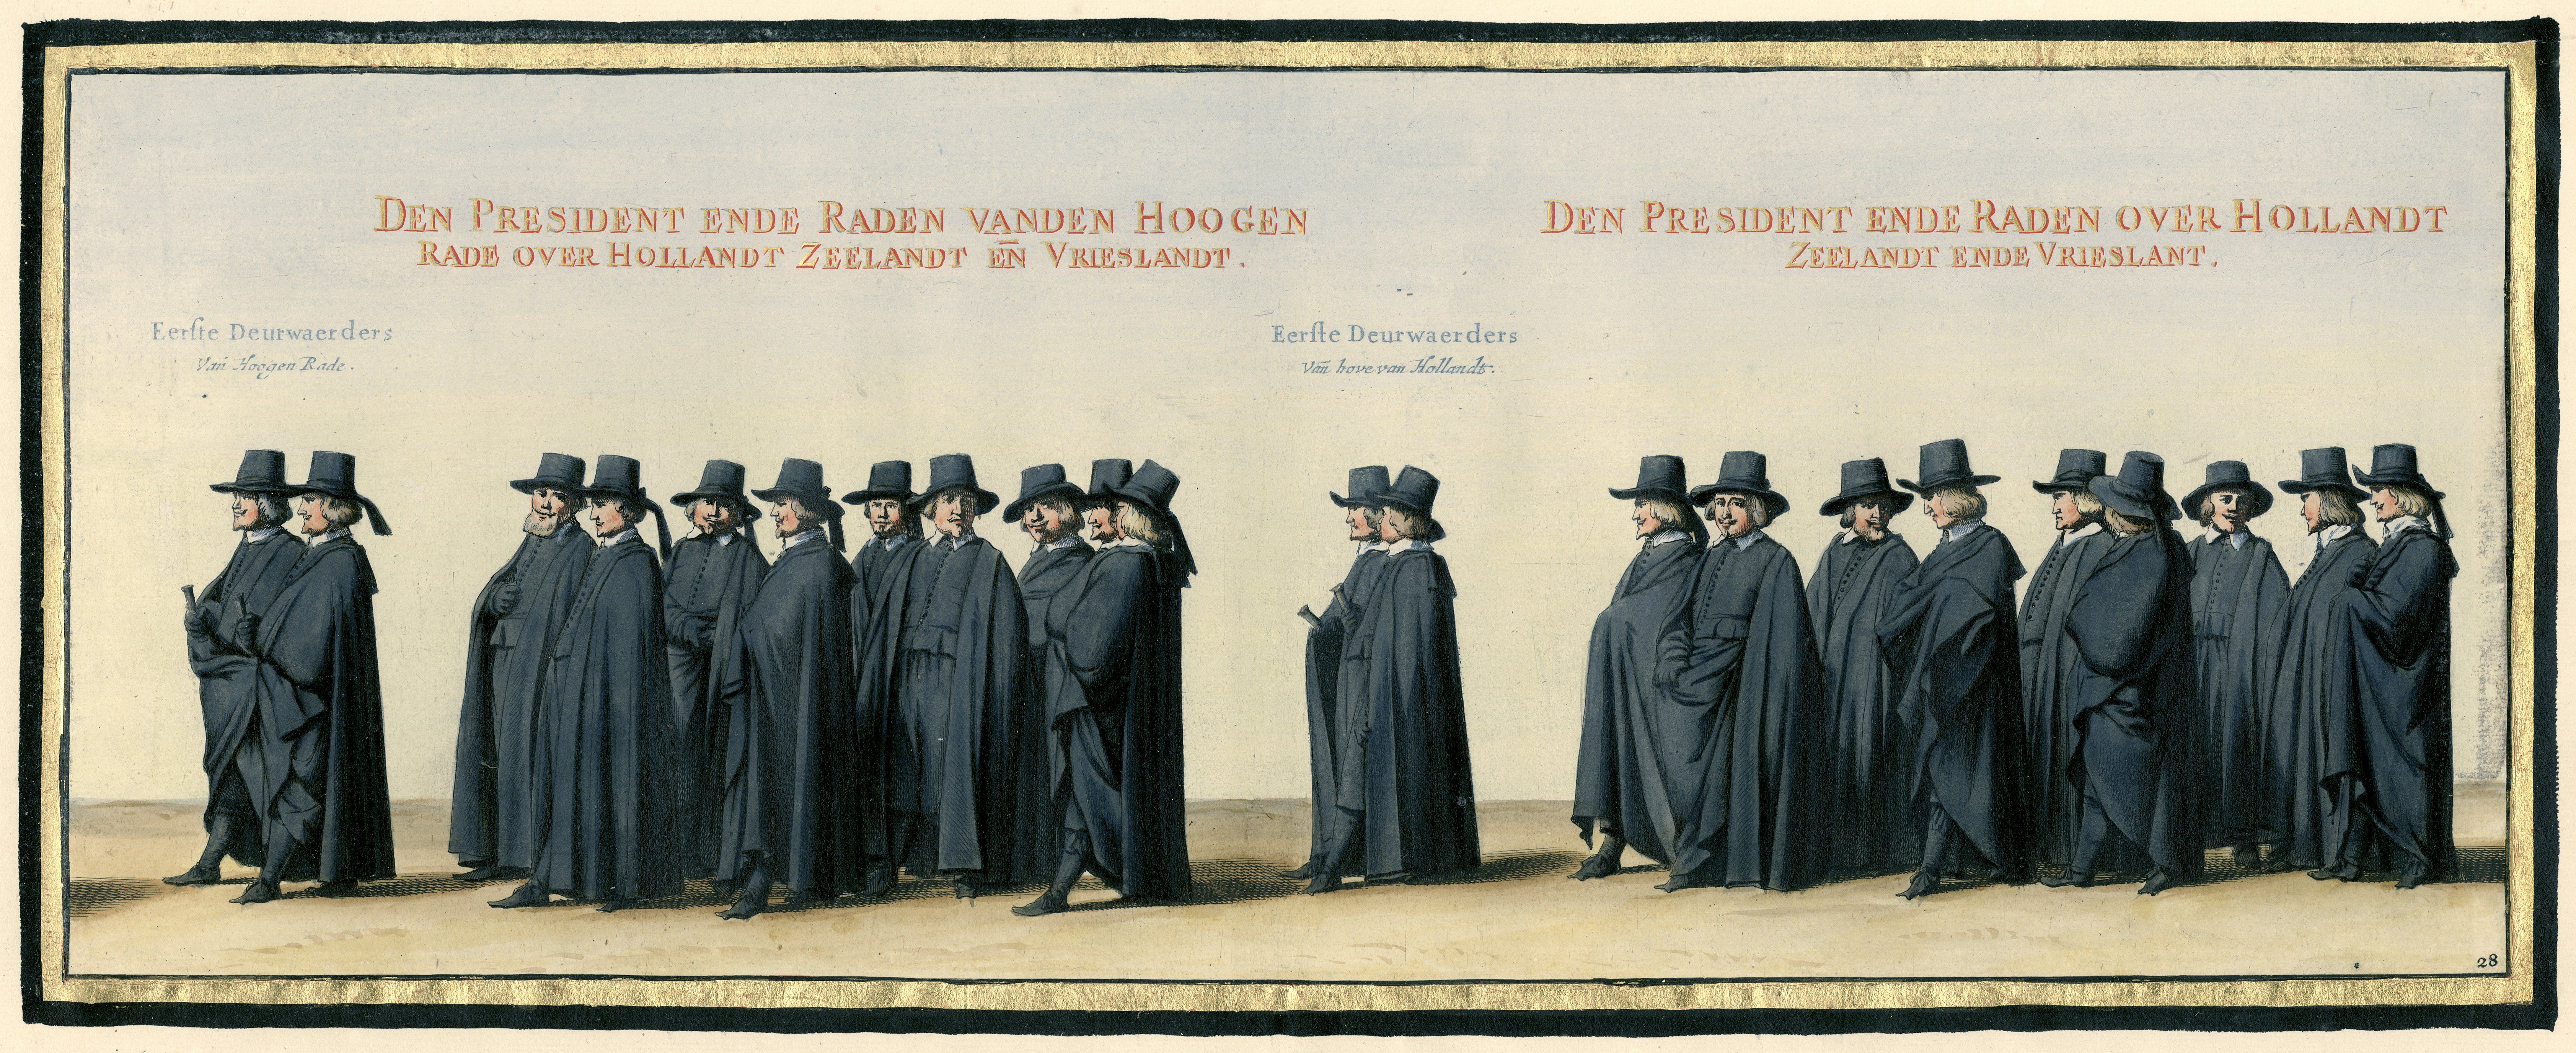 De Hoge Raad van Holland, Zeeland en West-Friesland bij de begrafenisstoet van Frederik Hendrik (Pieter Post tussen 1647 en 1651) Rijksmuseum (WikiCommons)